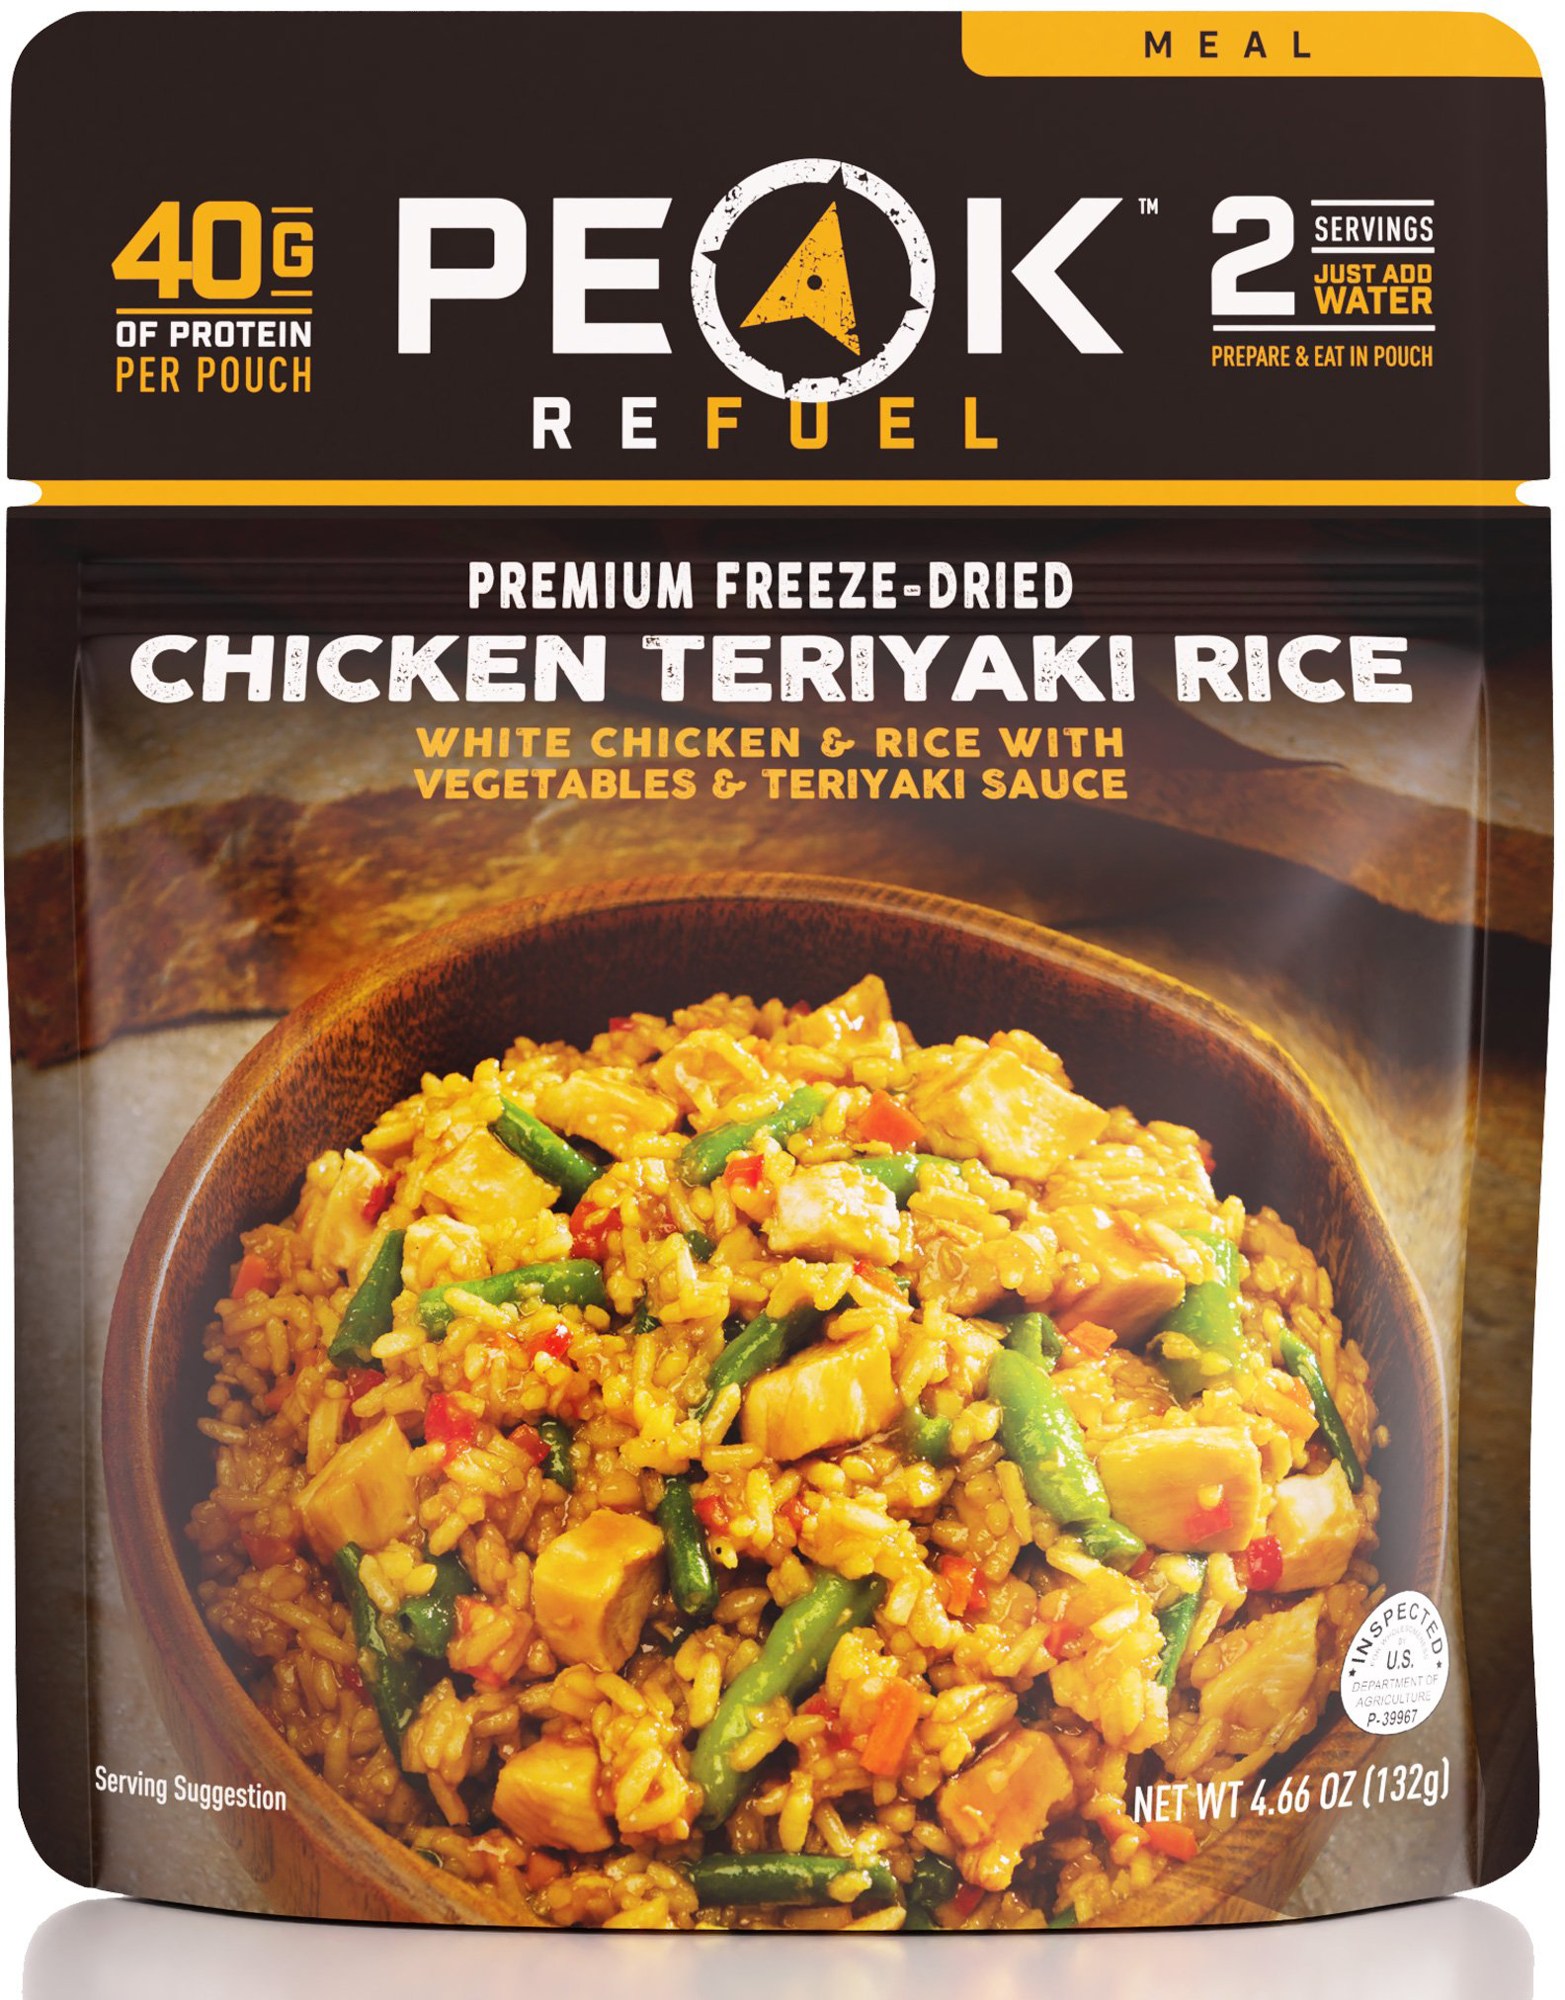 Курица с рисом Терияки – 2 порции PEAK REFUEL запеченный ролл с курицей терияки 8 шт